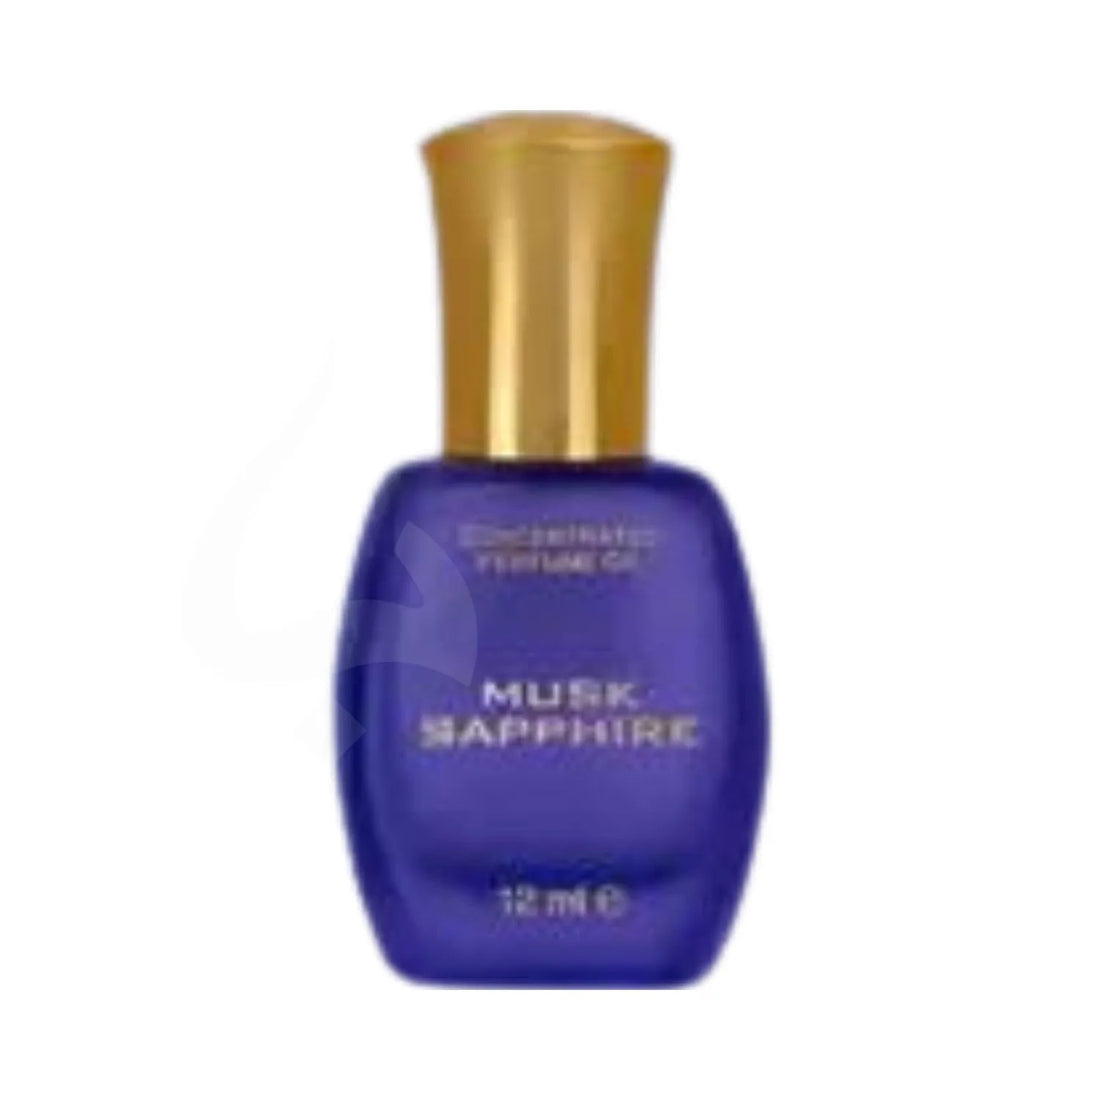 Musk Sapphire Perfume Oil Bottle